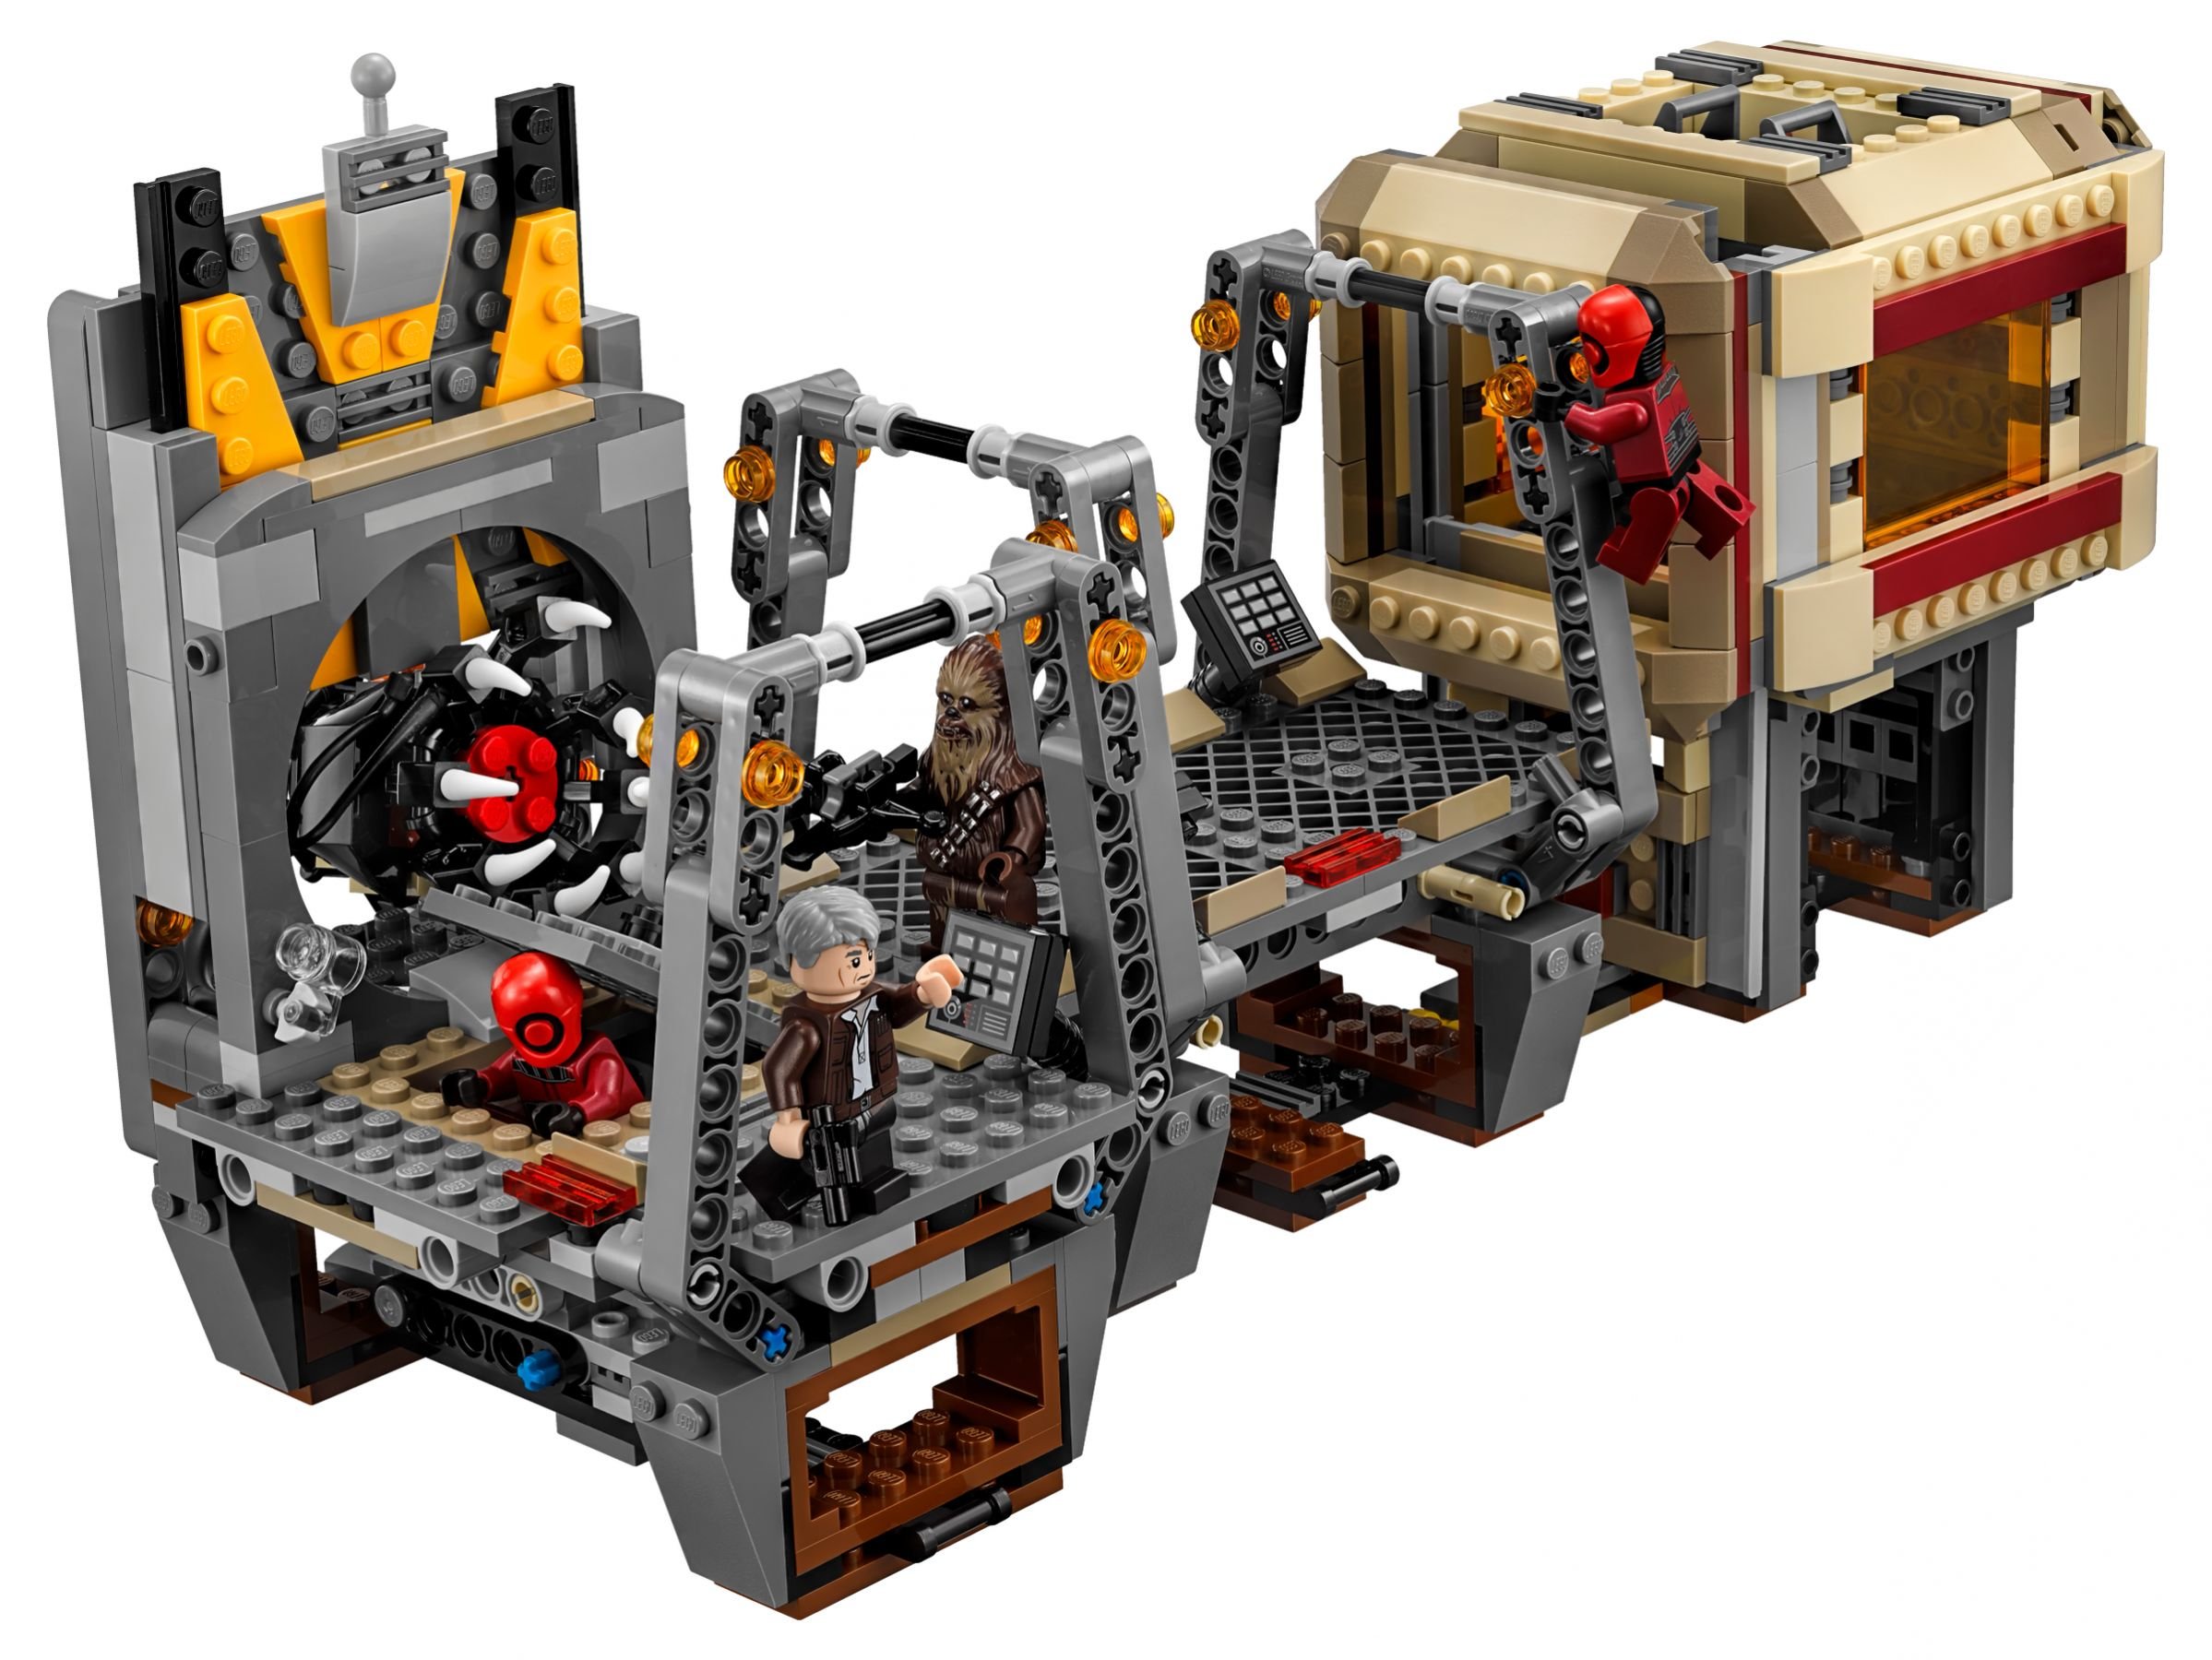 LEGO Star Wars 75180 Rathtar™ Escape LEGO_75180_alt3.jpg